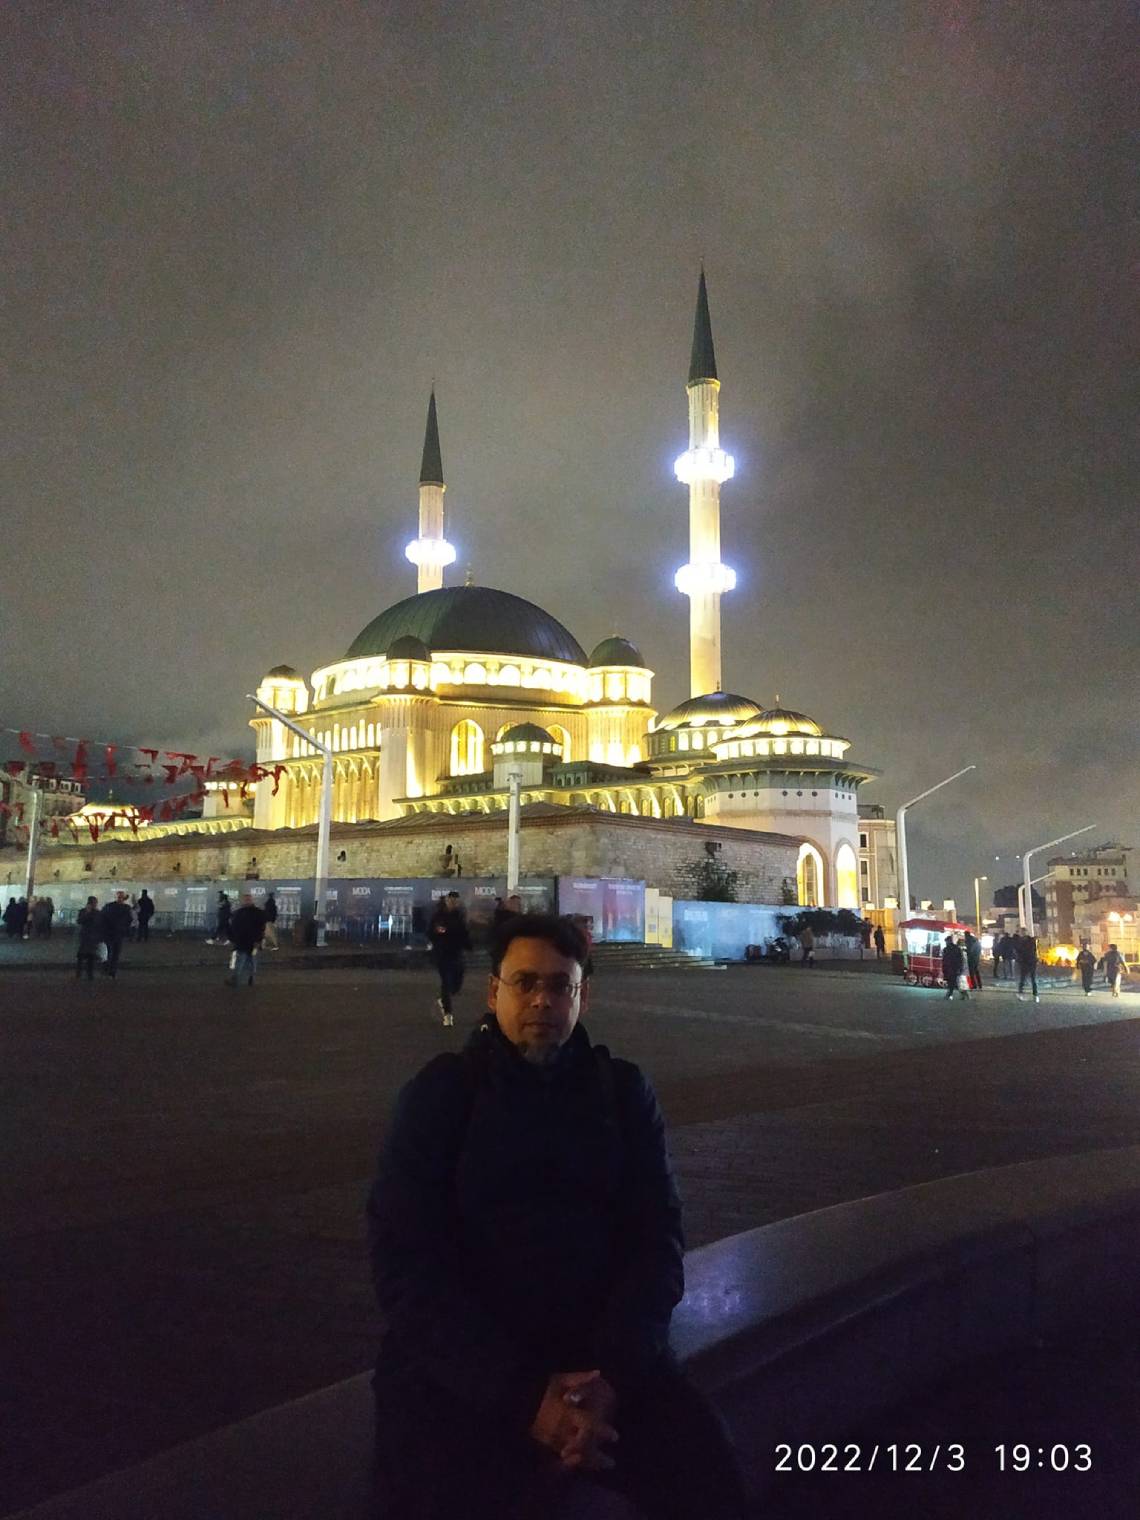 তাকসিম স্কয়ার - ইস্তাম্বুলের অভিযাত্রী ২ - Taksim Square